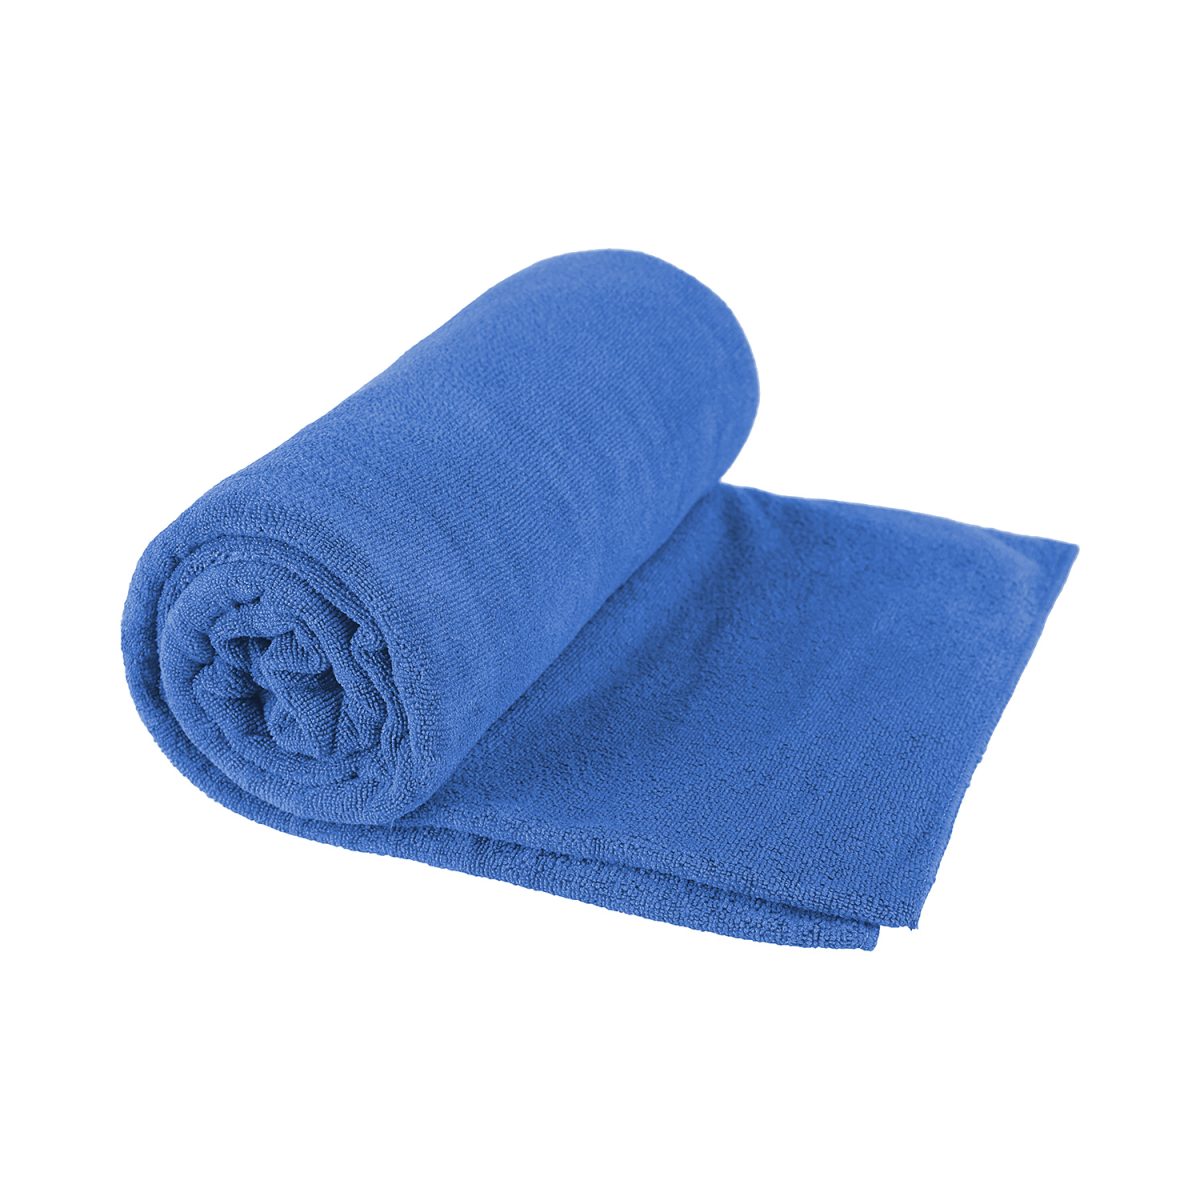 S2S Tek Towel XL Pacific Blue 75cm x 150cm